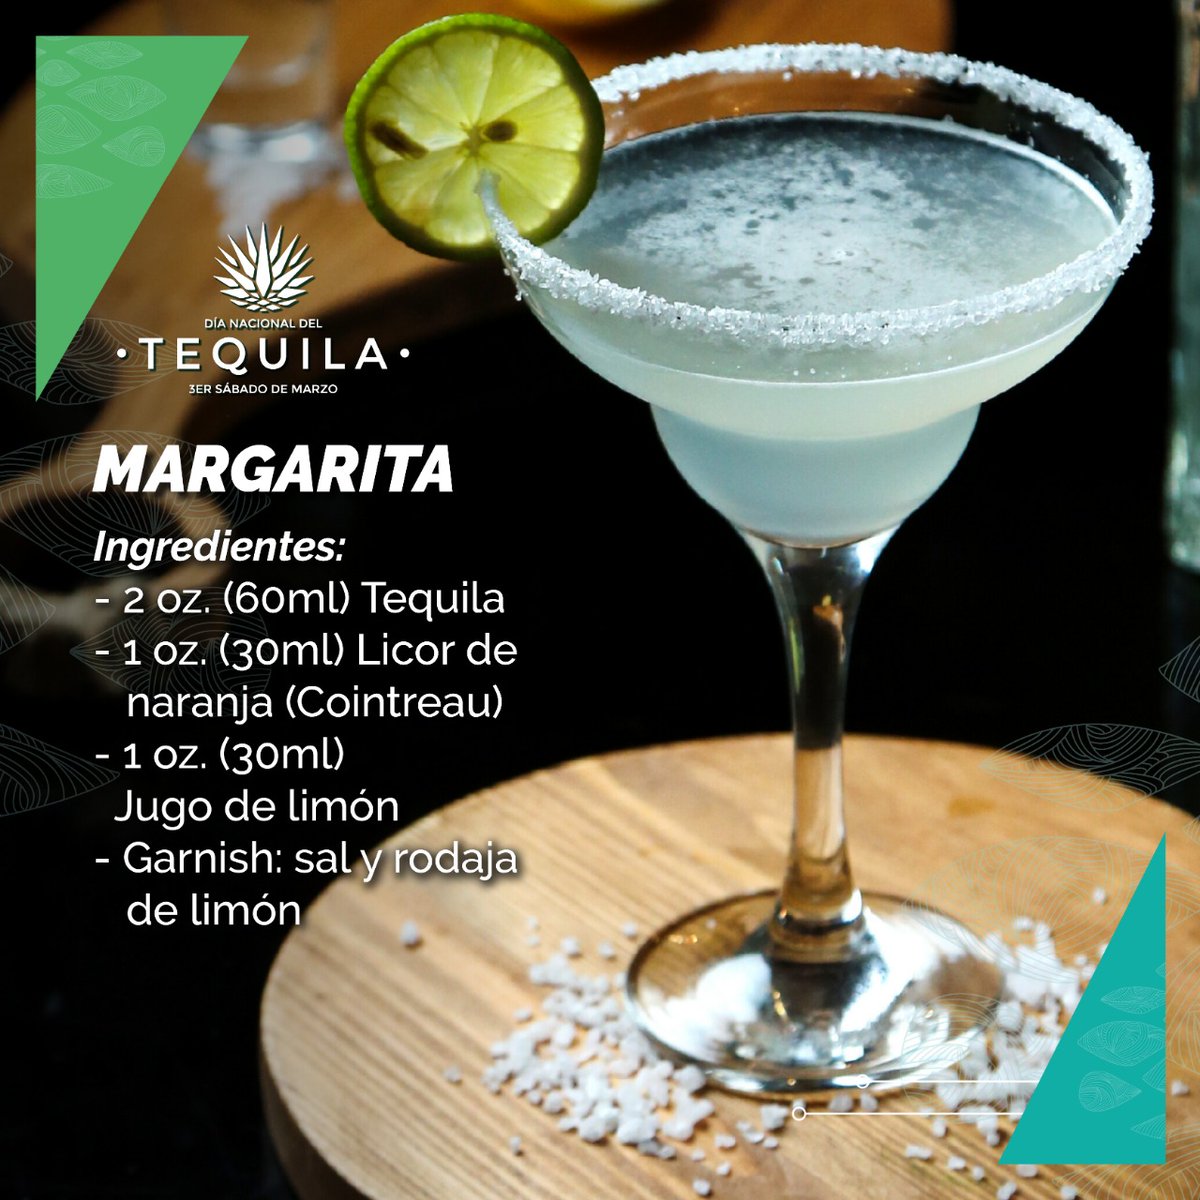 Día Nacional del on Twitter: "Hoy podrías preparar en casa la receta del coctel en el mundo, la Margarita ¡Disfrútalo! MARGARITA 2 oz. (60ml) Tequila 1 oz. (30ml) Licor